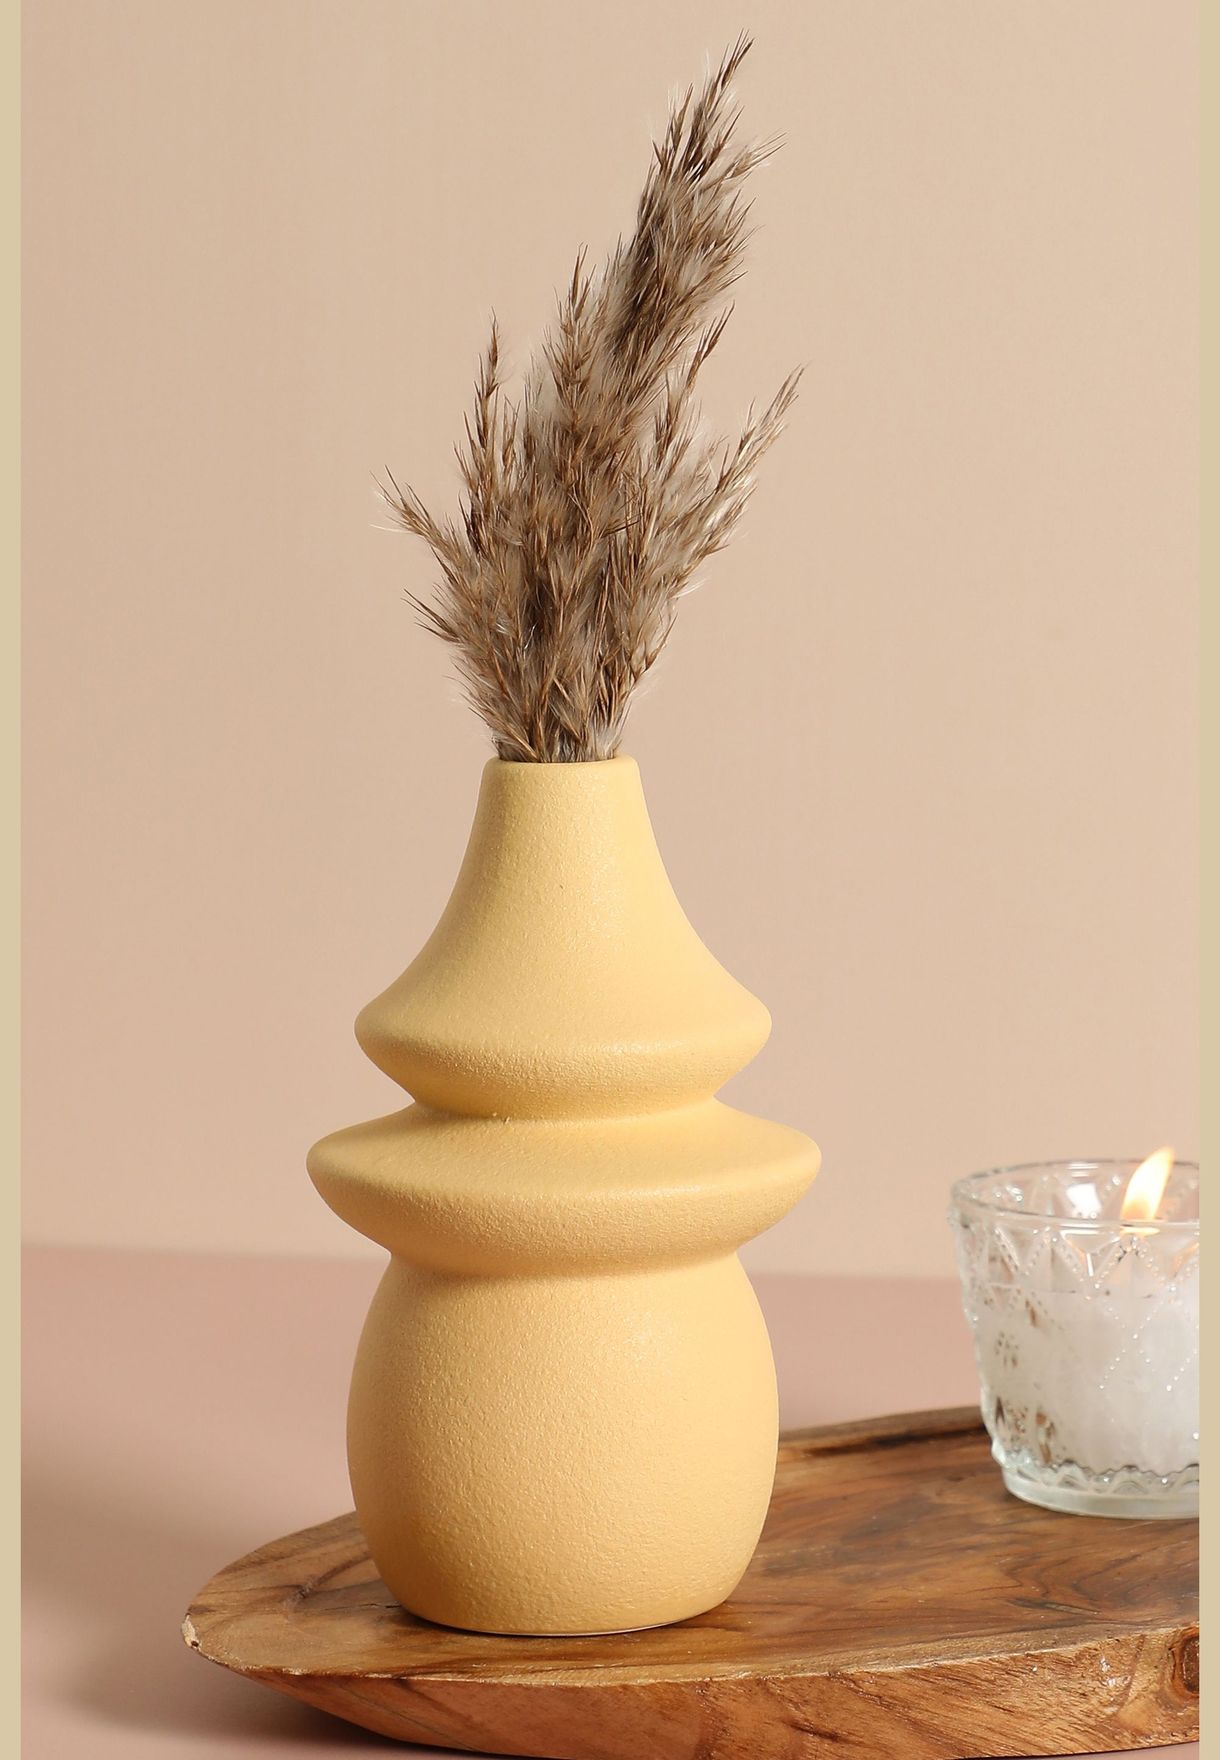 Minimalistic Modern Ceramic Flower Vase For Home Decor 